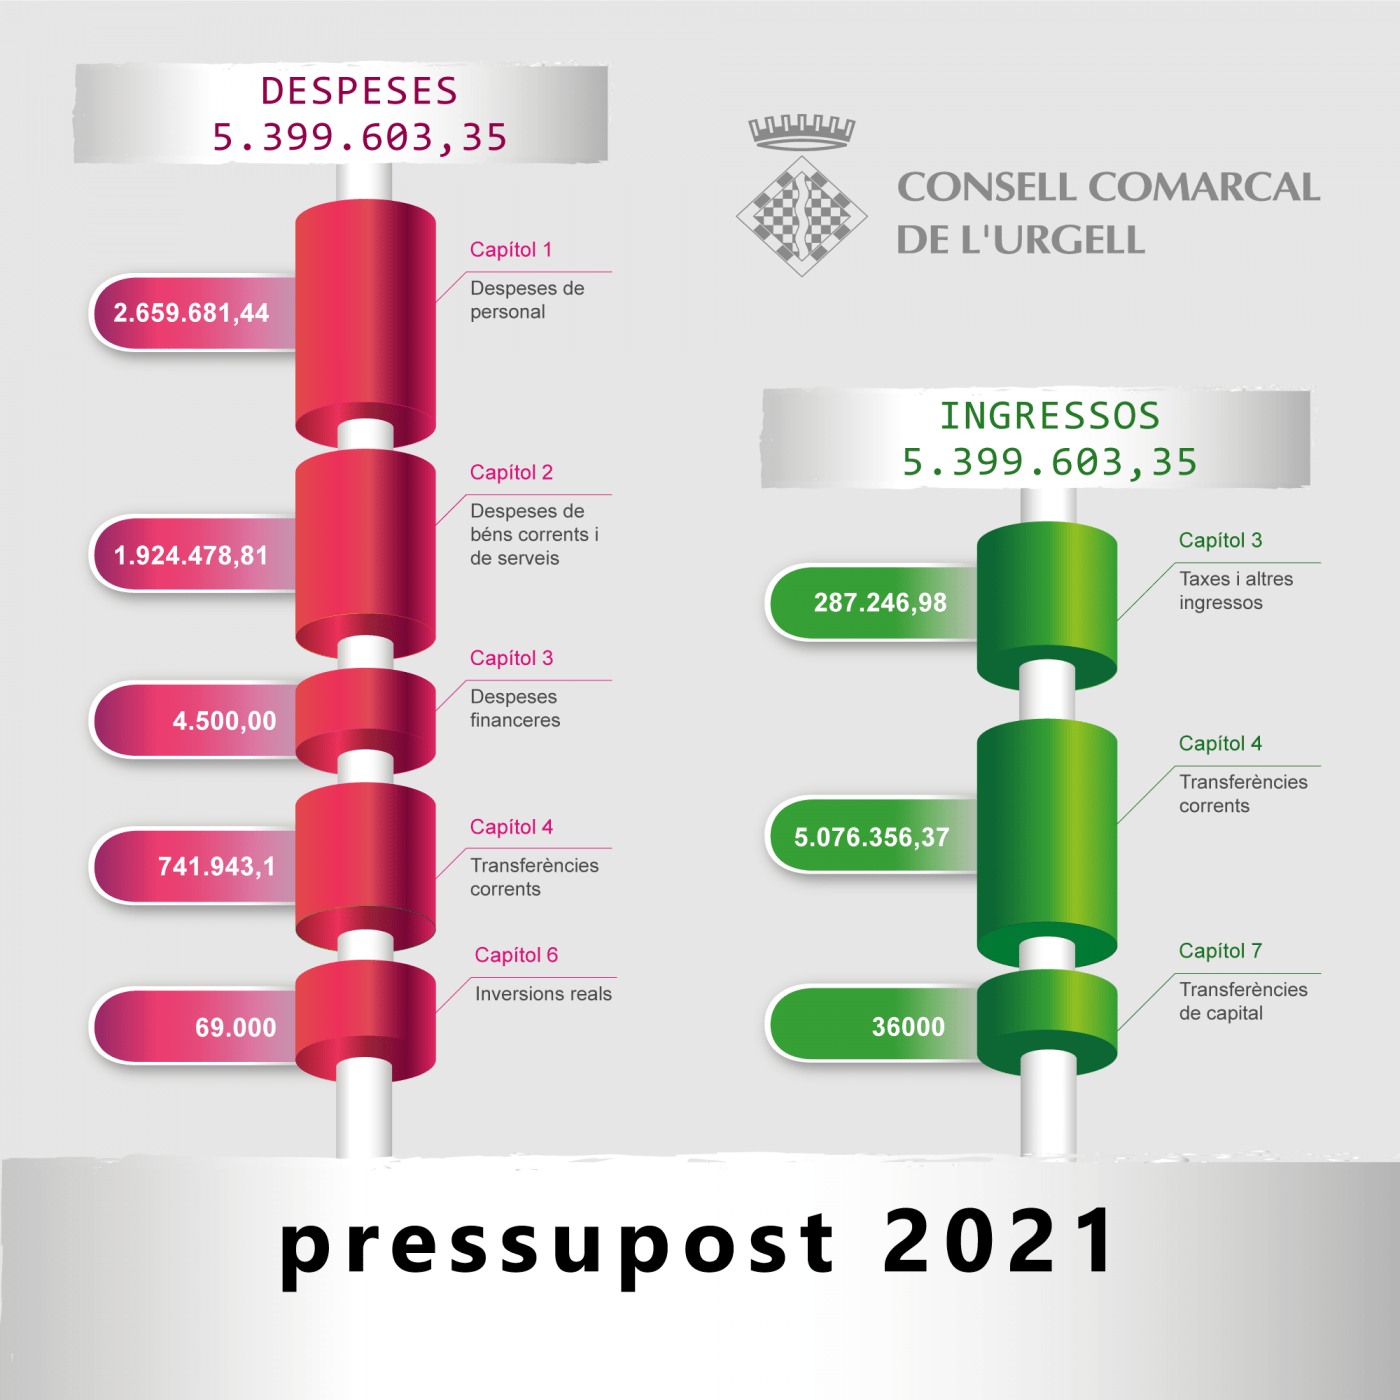 El Consell Comarcal de l’Urgell aprova un pressupost per al 2021 amb un increment molt destacat pel que fa a l’àrea de serveis socials.